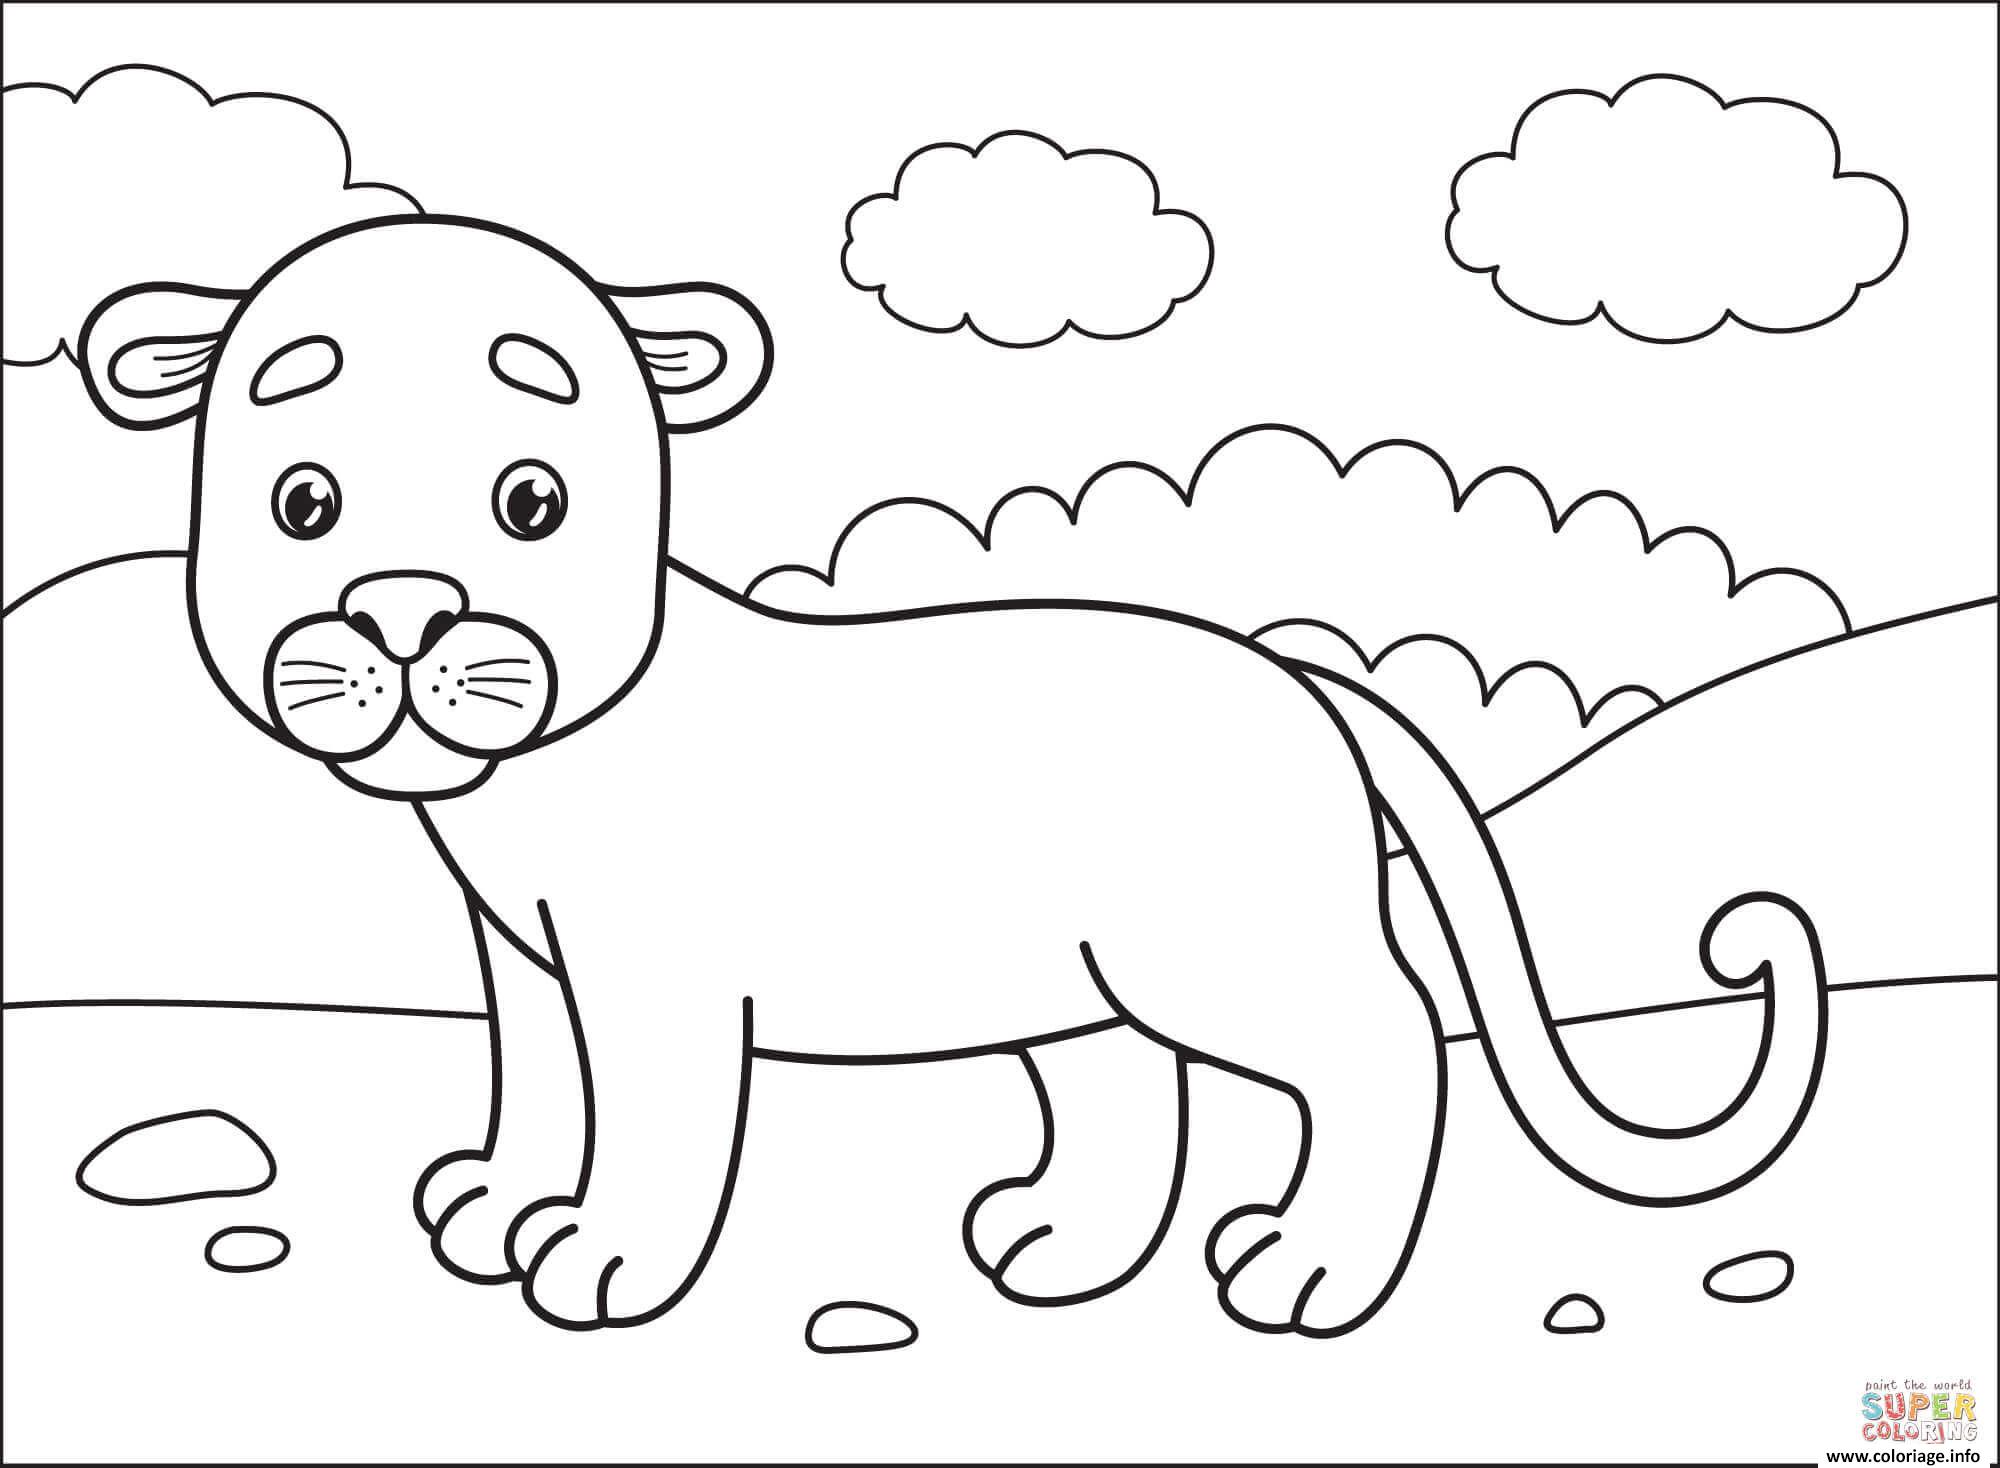 Dessin puma cougar panthere lion de montagne Coloriage Gratuit à Imprimer